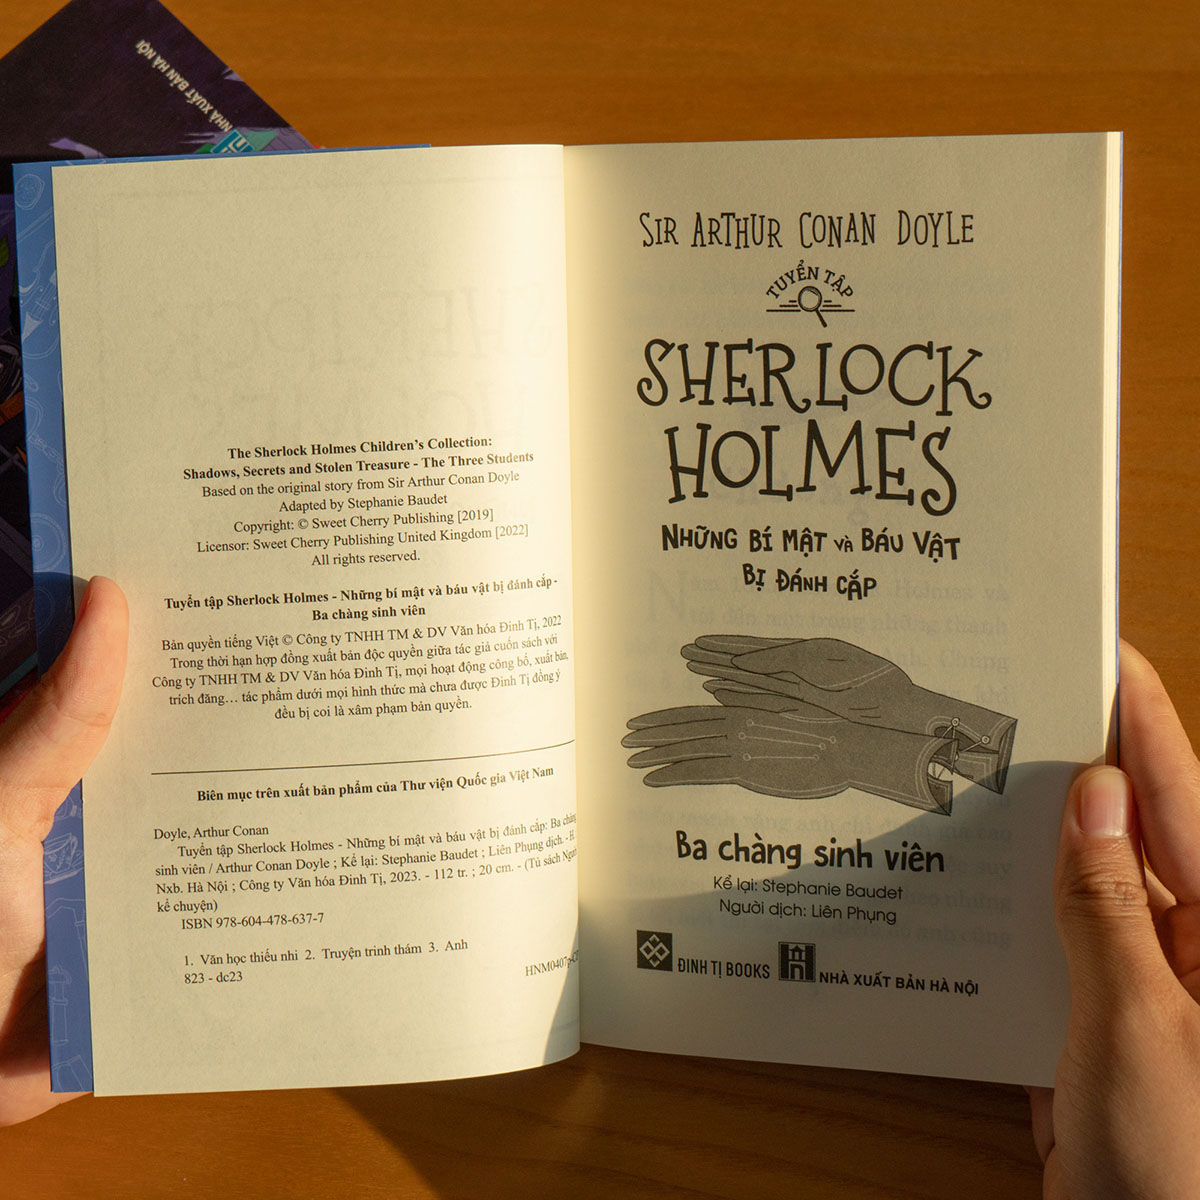 Tuyển Tập Sherlock Holmes - Những Bí Mật Và Báu Vật Bị Đánh Cắp- Ba Chàng Sinh Viên